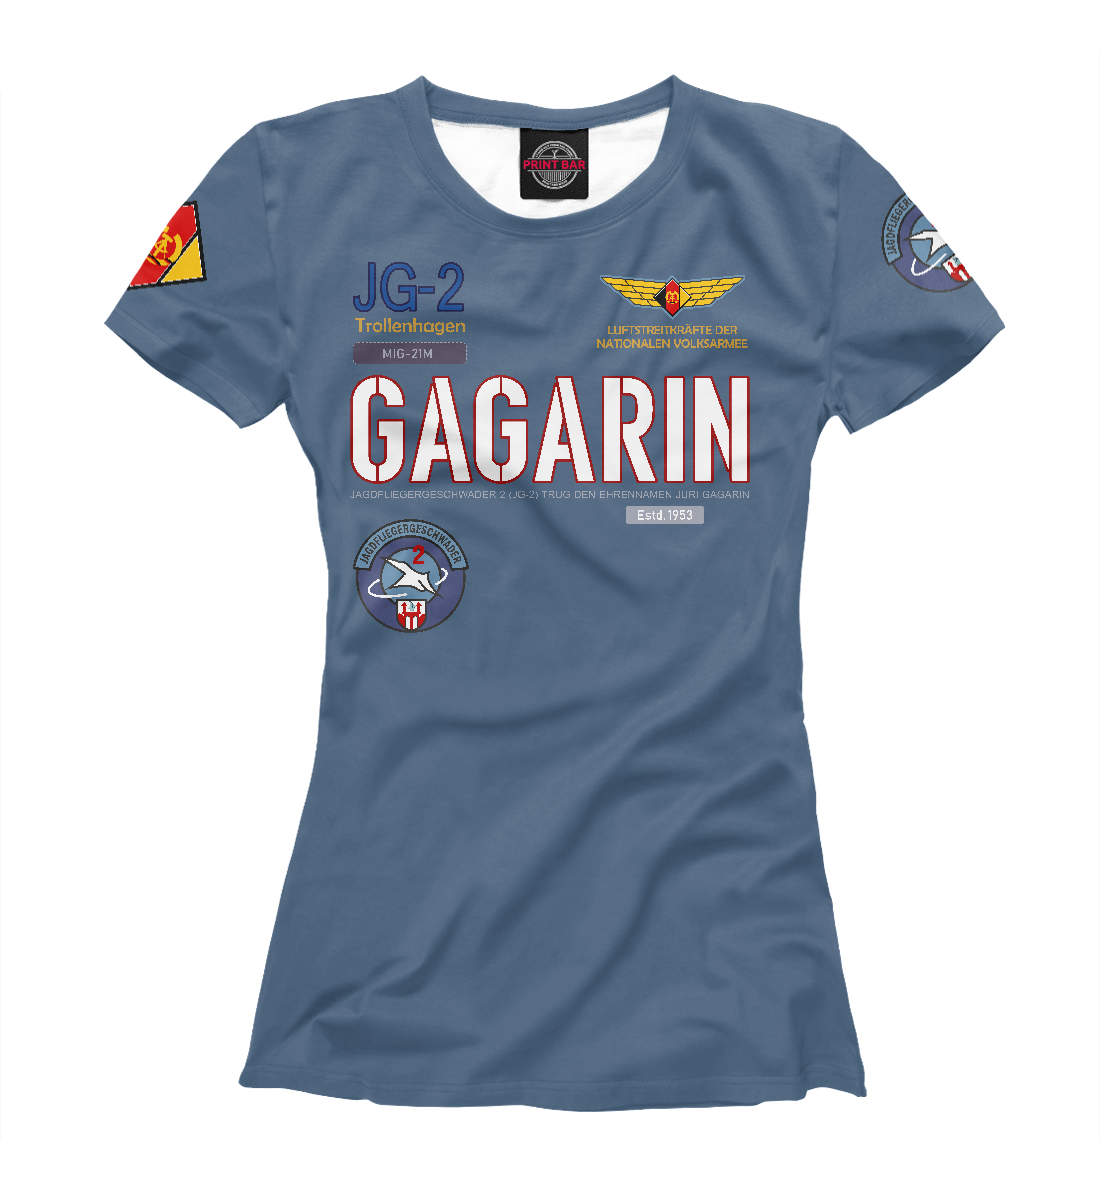 Футболка ВВС ГДР Эскадрилья Гагарин для женщин, артикул: VVS-481647-fut-1mp